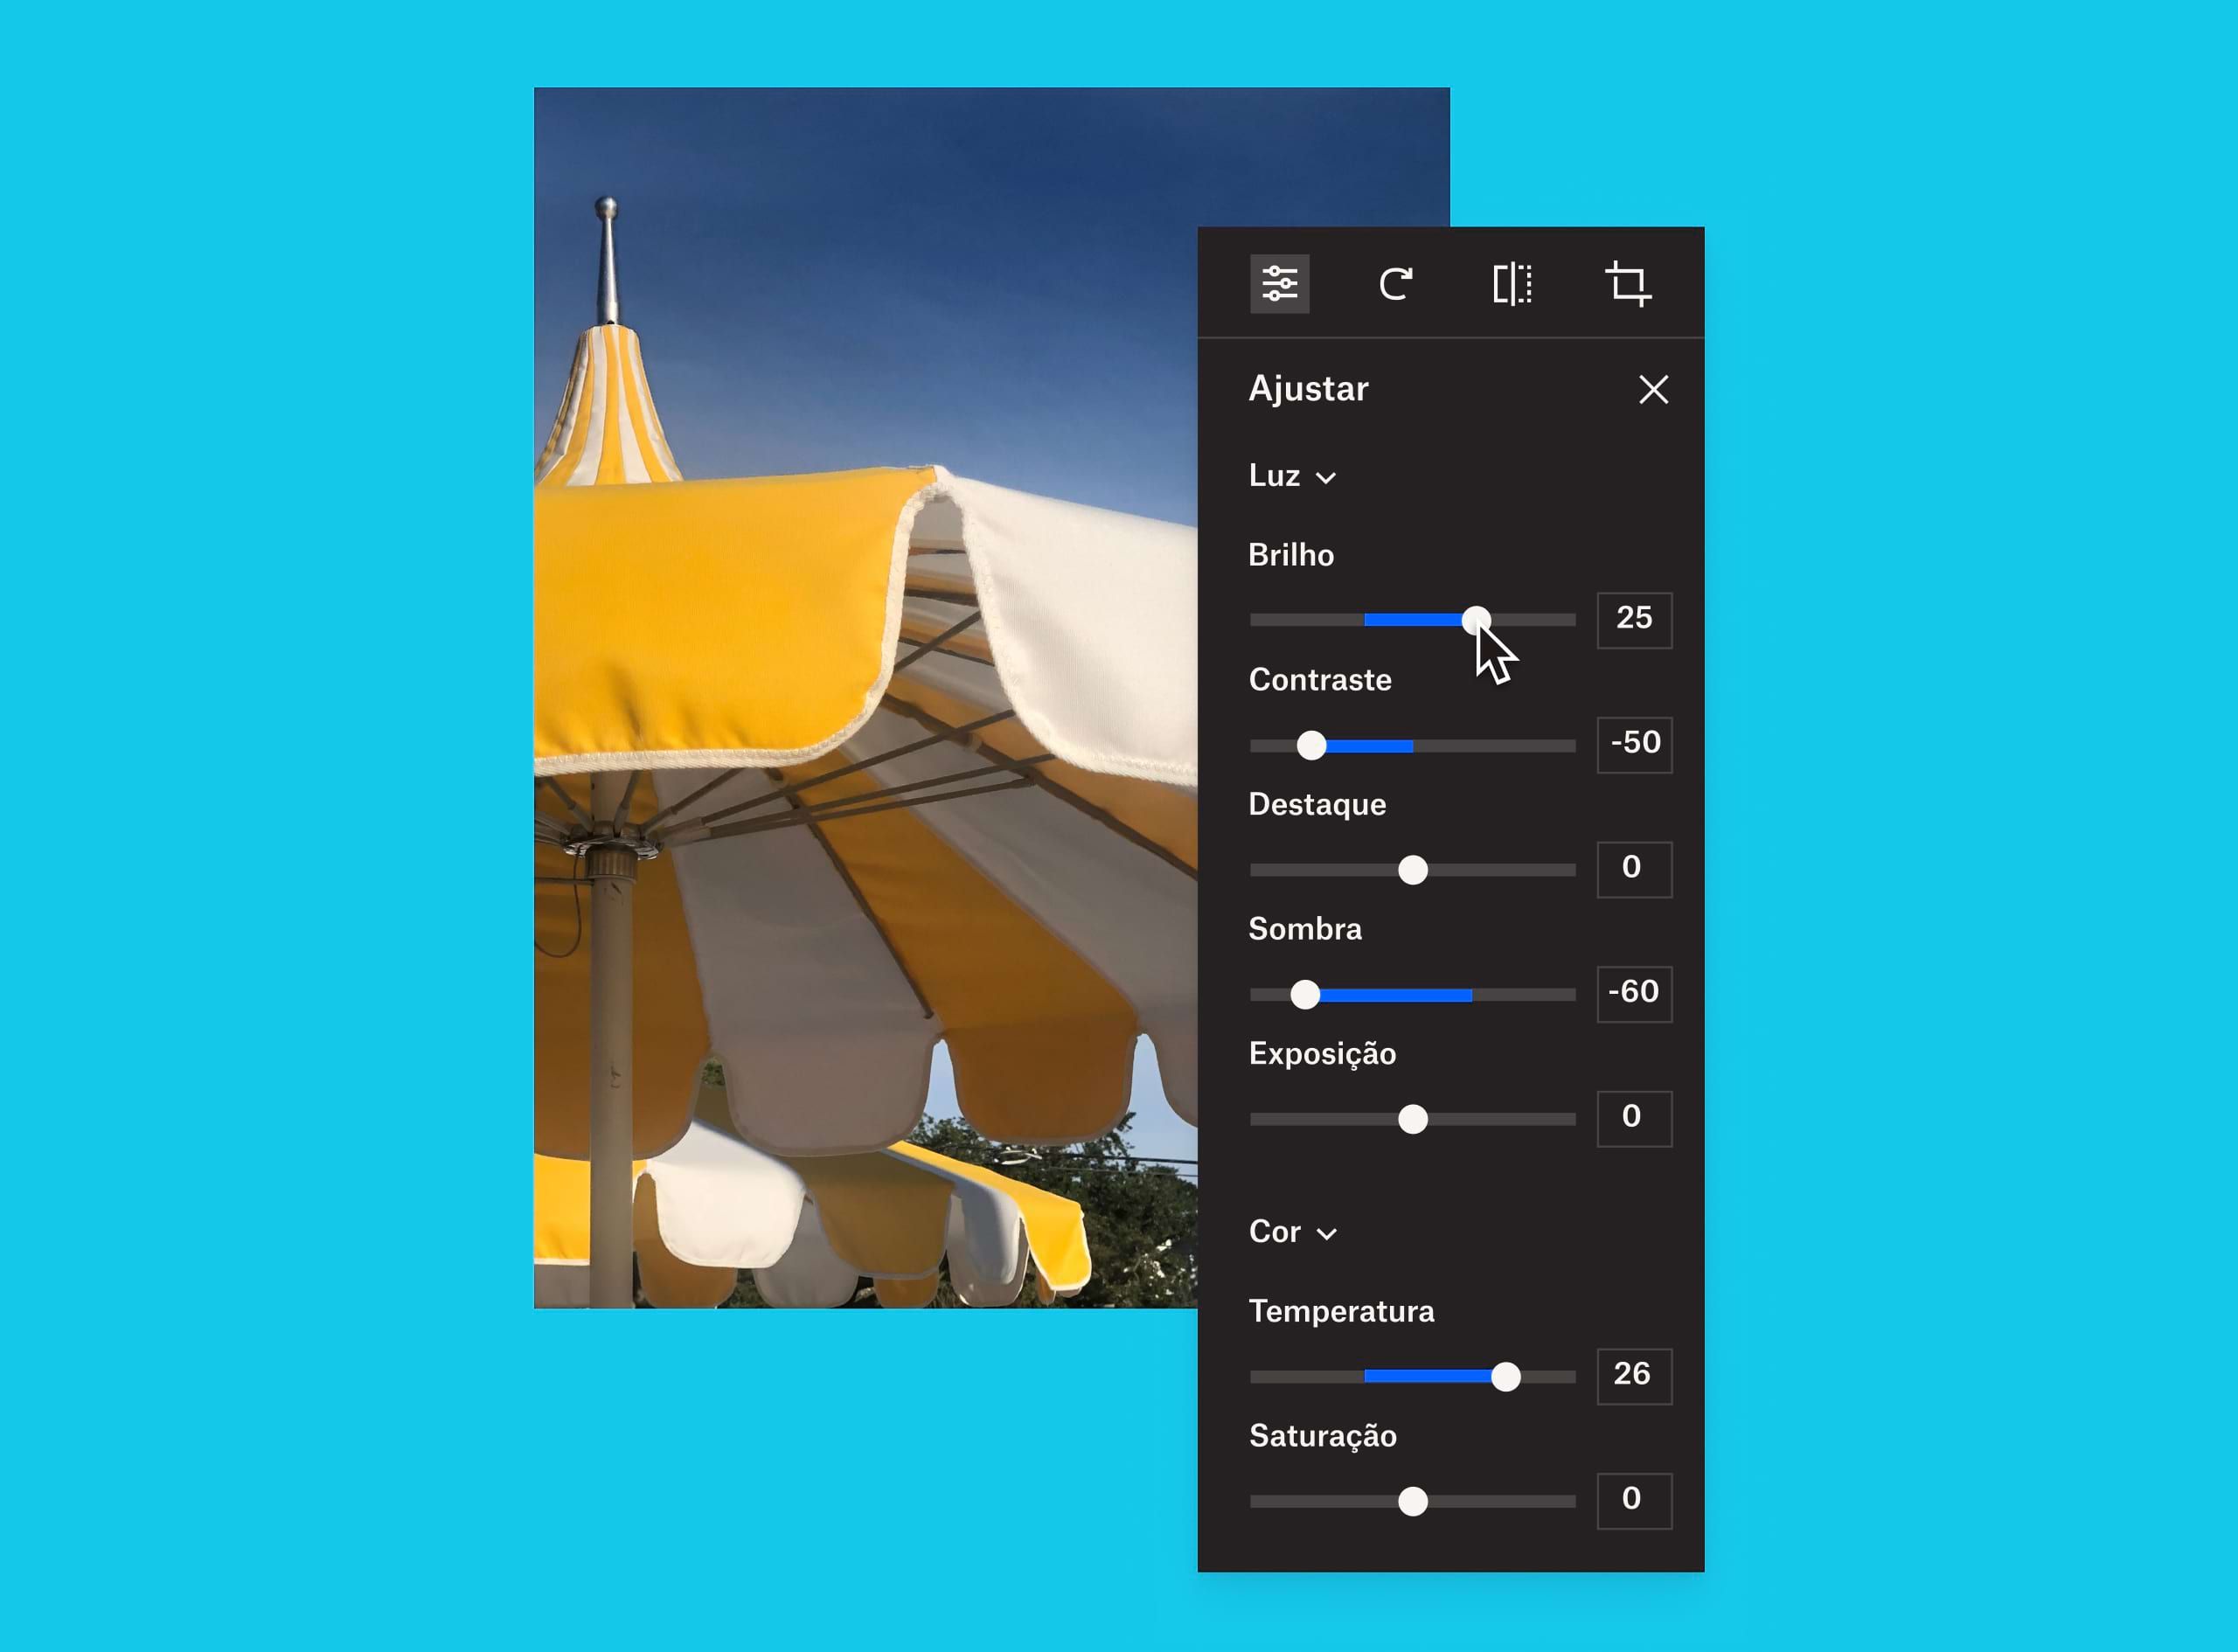 Uma imagem de um guarda-chuva amarelo e branco com uma sobreposição do painel de ajuste de imagem onde um usuário está mudando o brilho da imagem